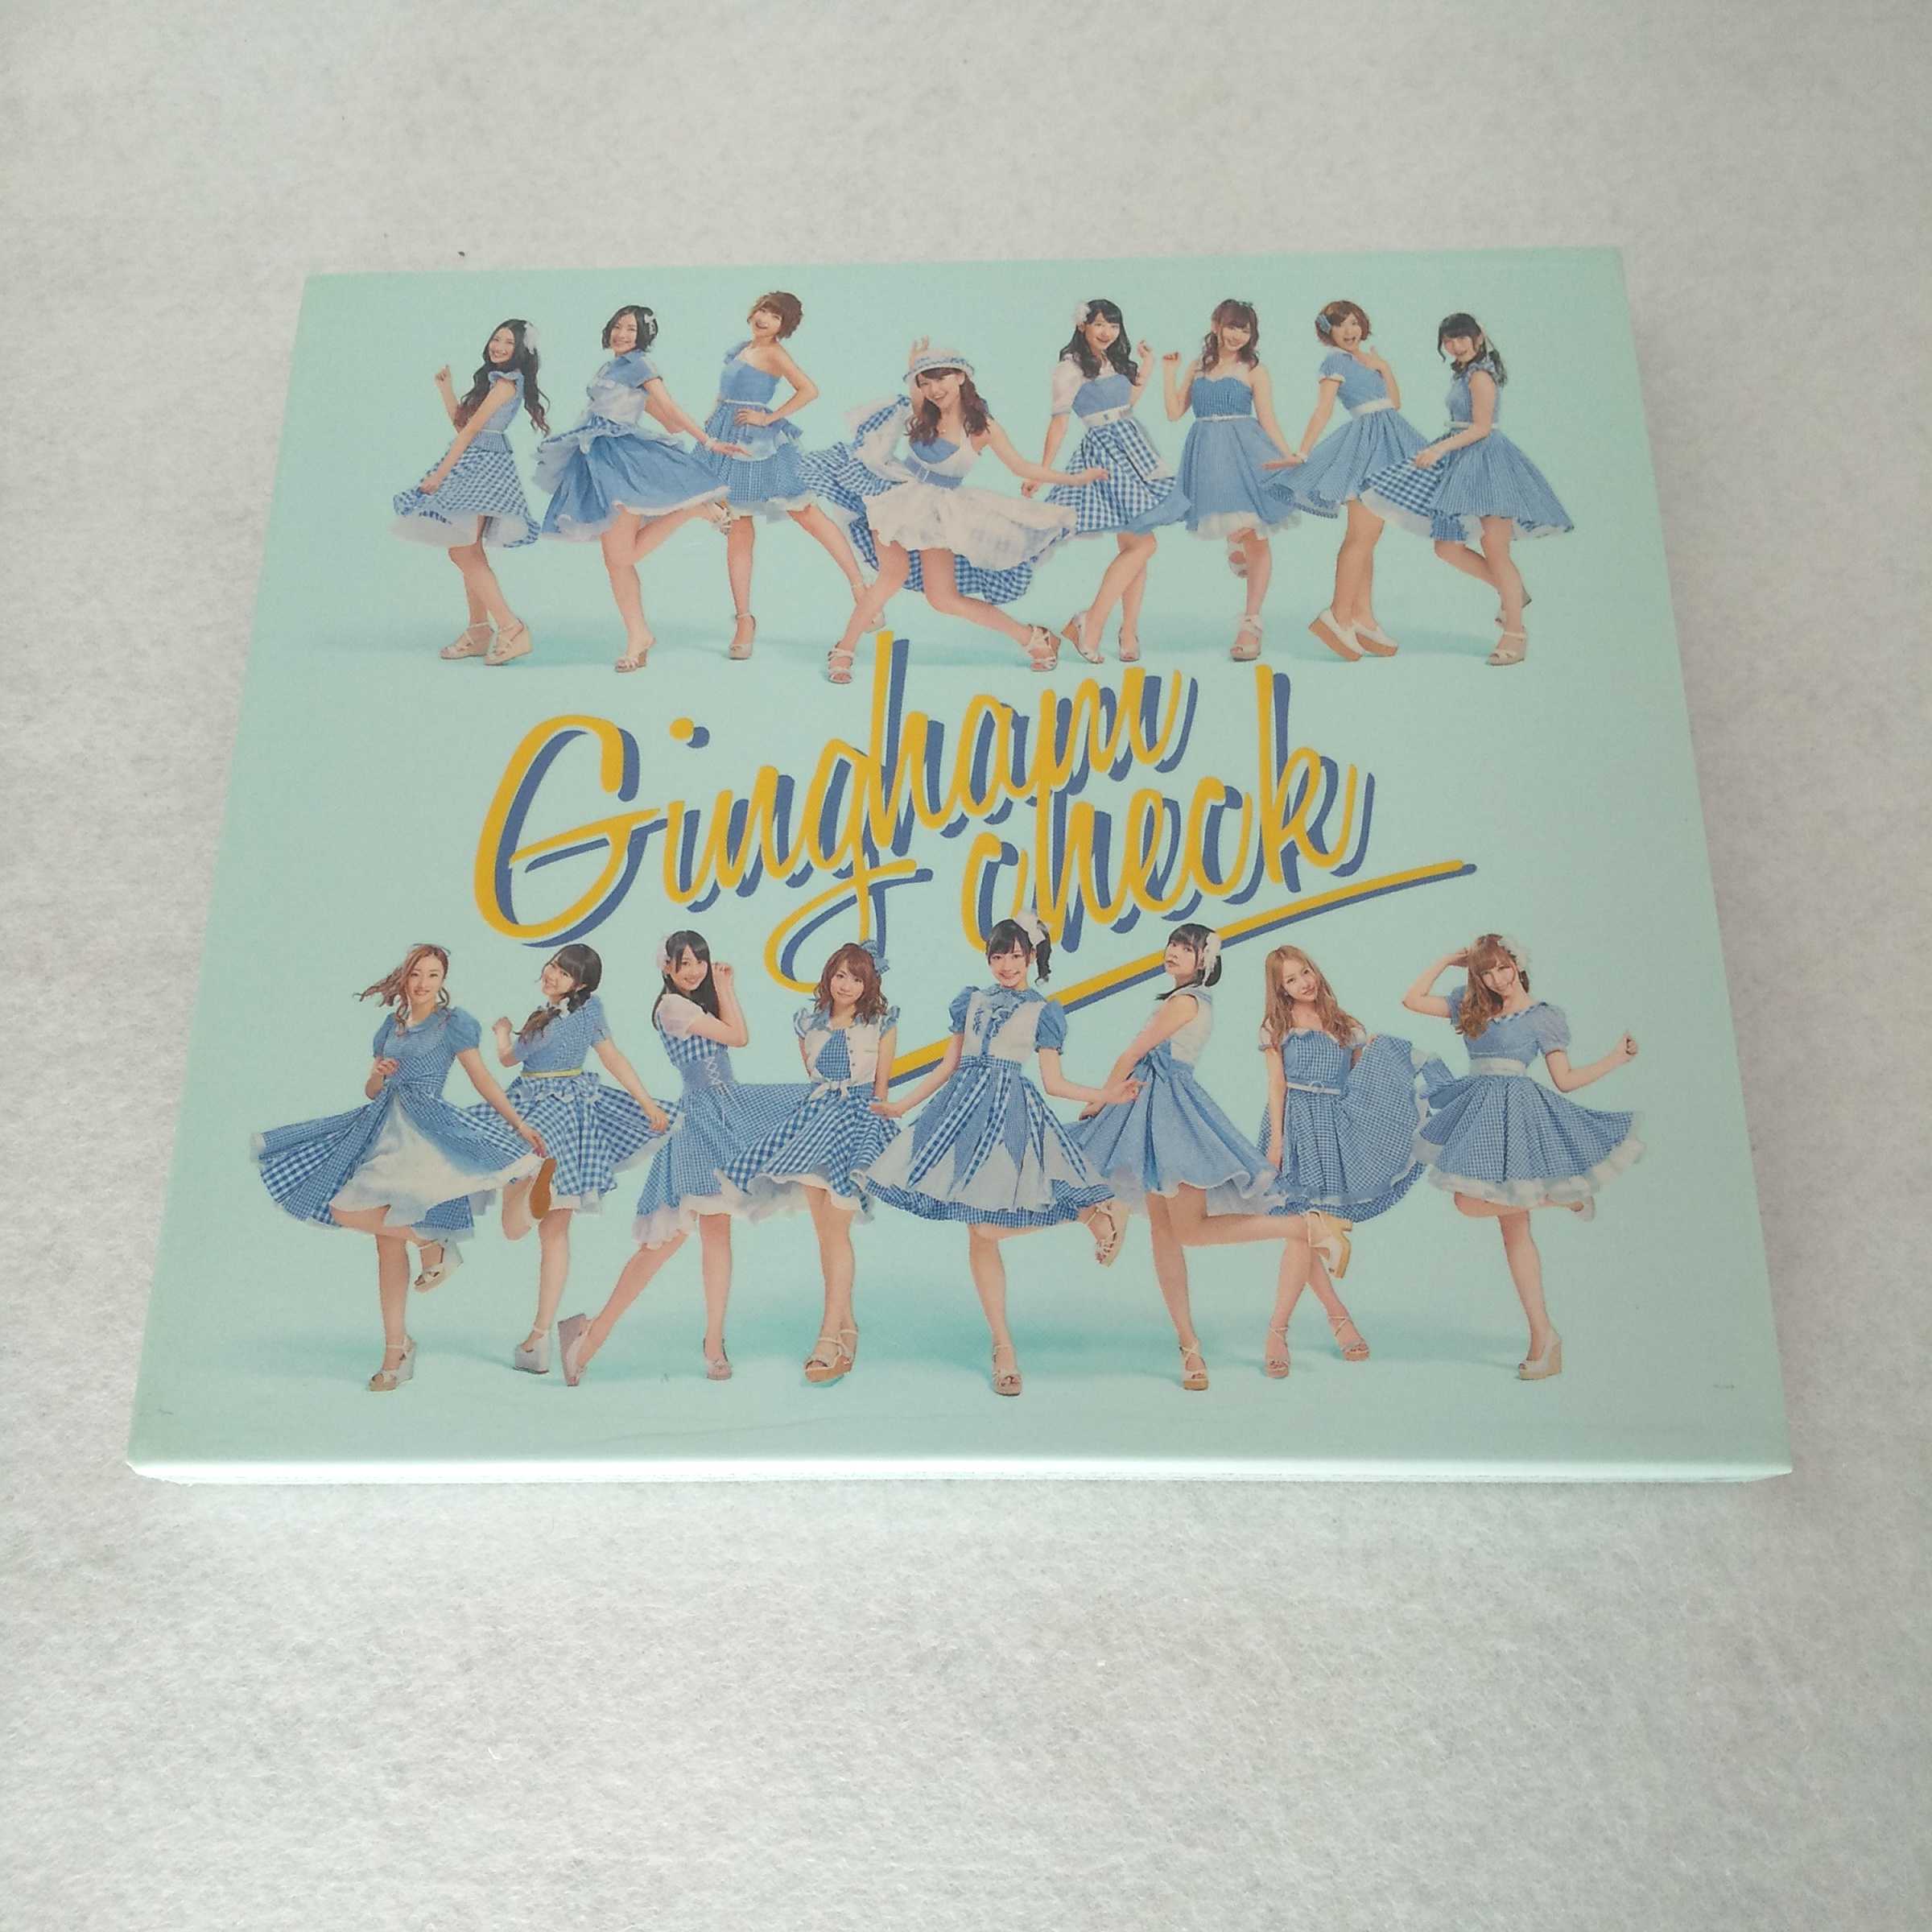 AC09727 【中古】 【CD】 ギンガムチェック 初回限定盤B/AKB48